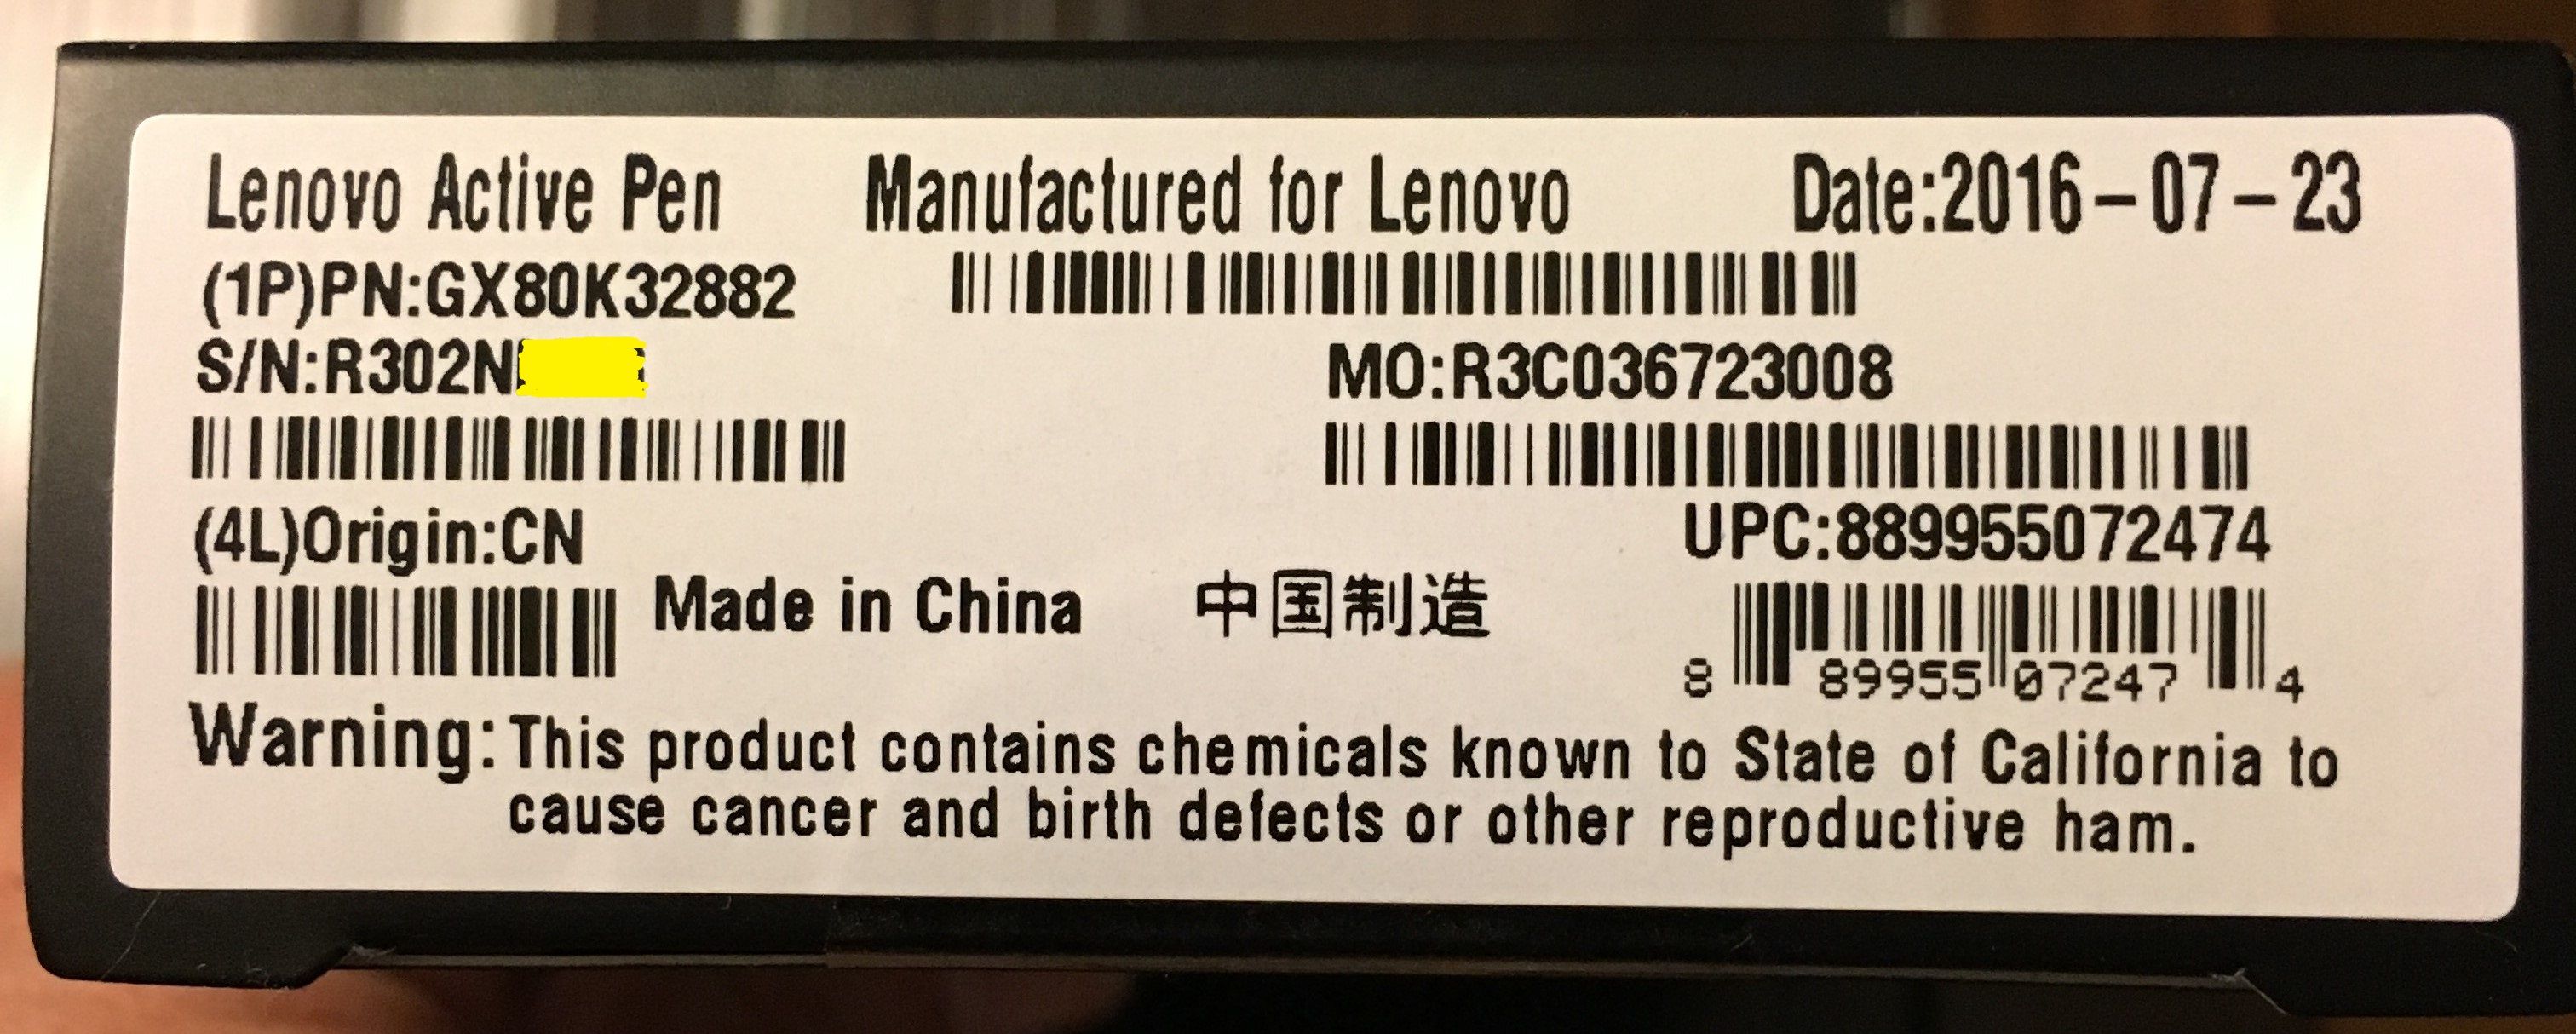 Lenovo Epp Employee Serial Number